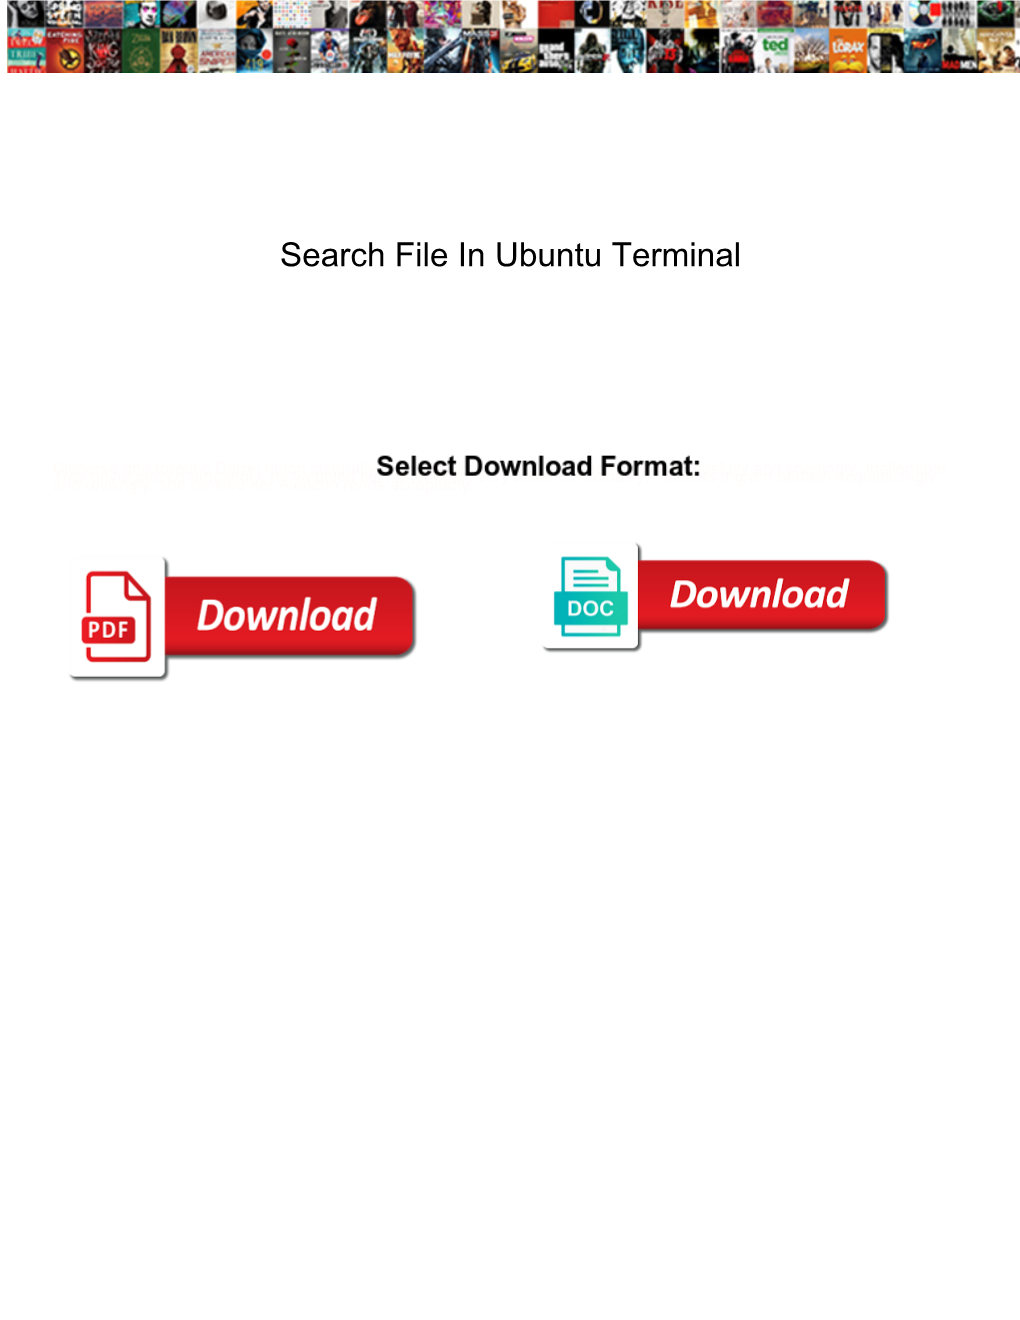 Search File in Ubuntu Terminal